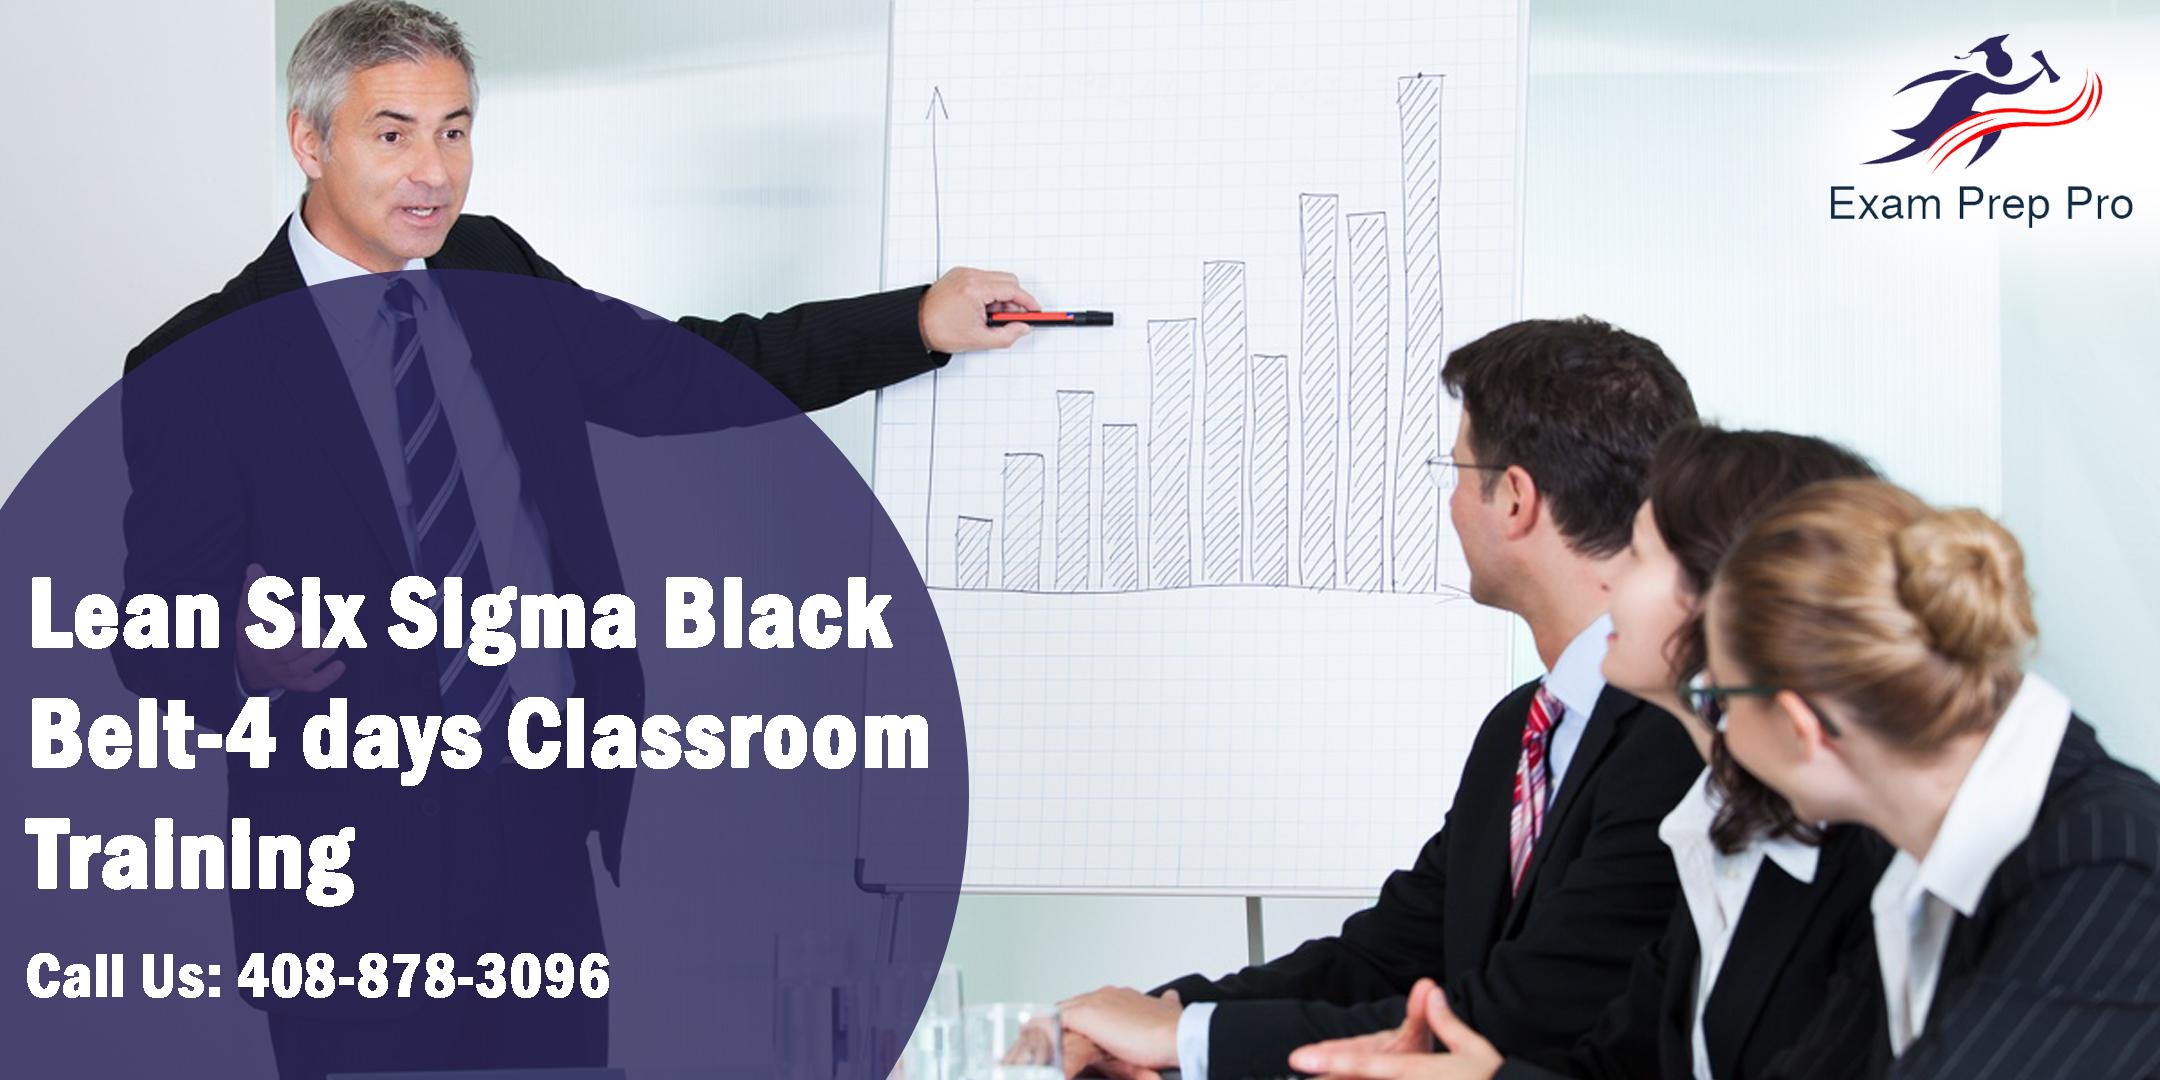 Lean Six Sigma Black Belt-4 days Classroom Training in Tampa, FL